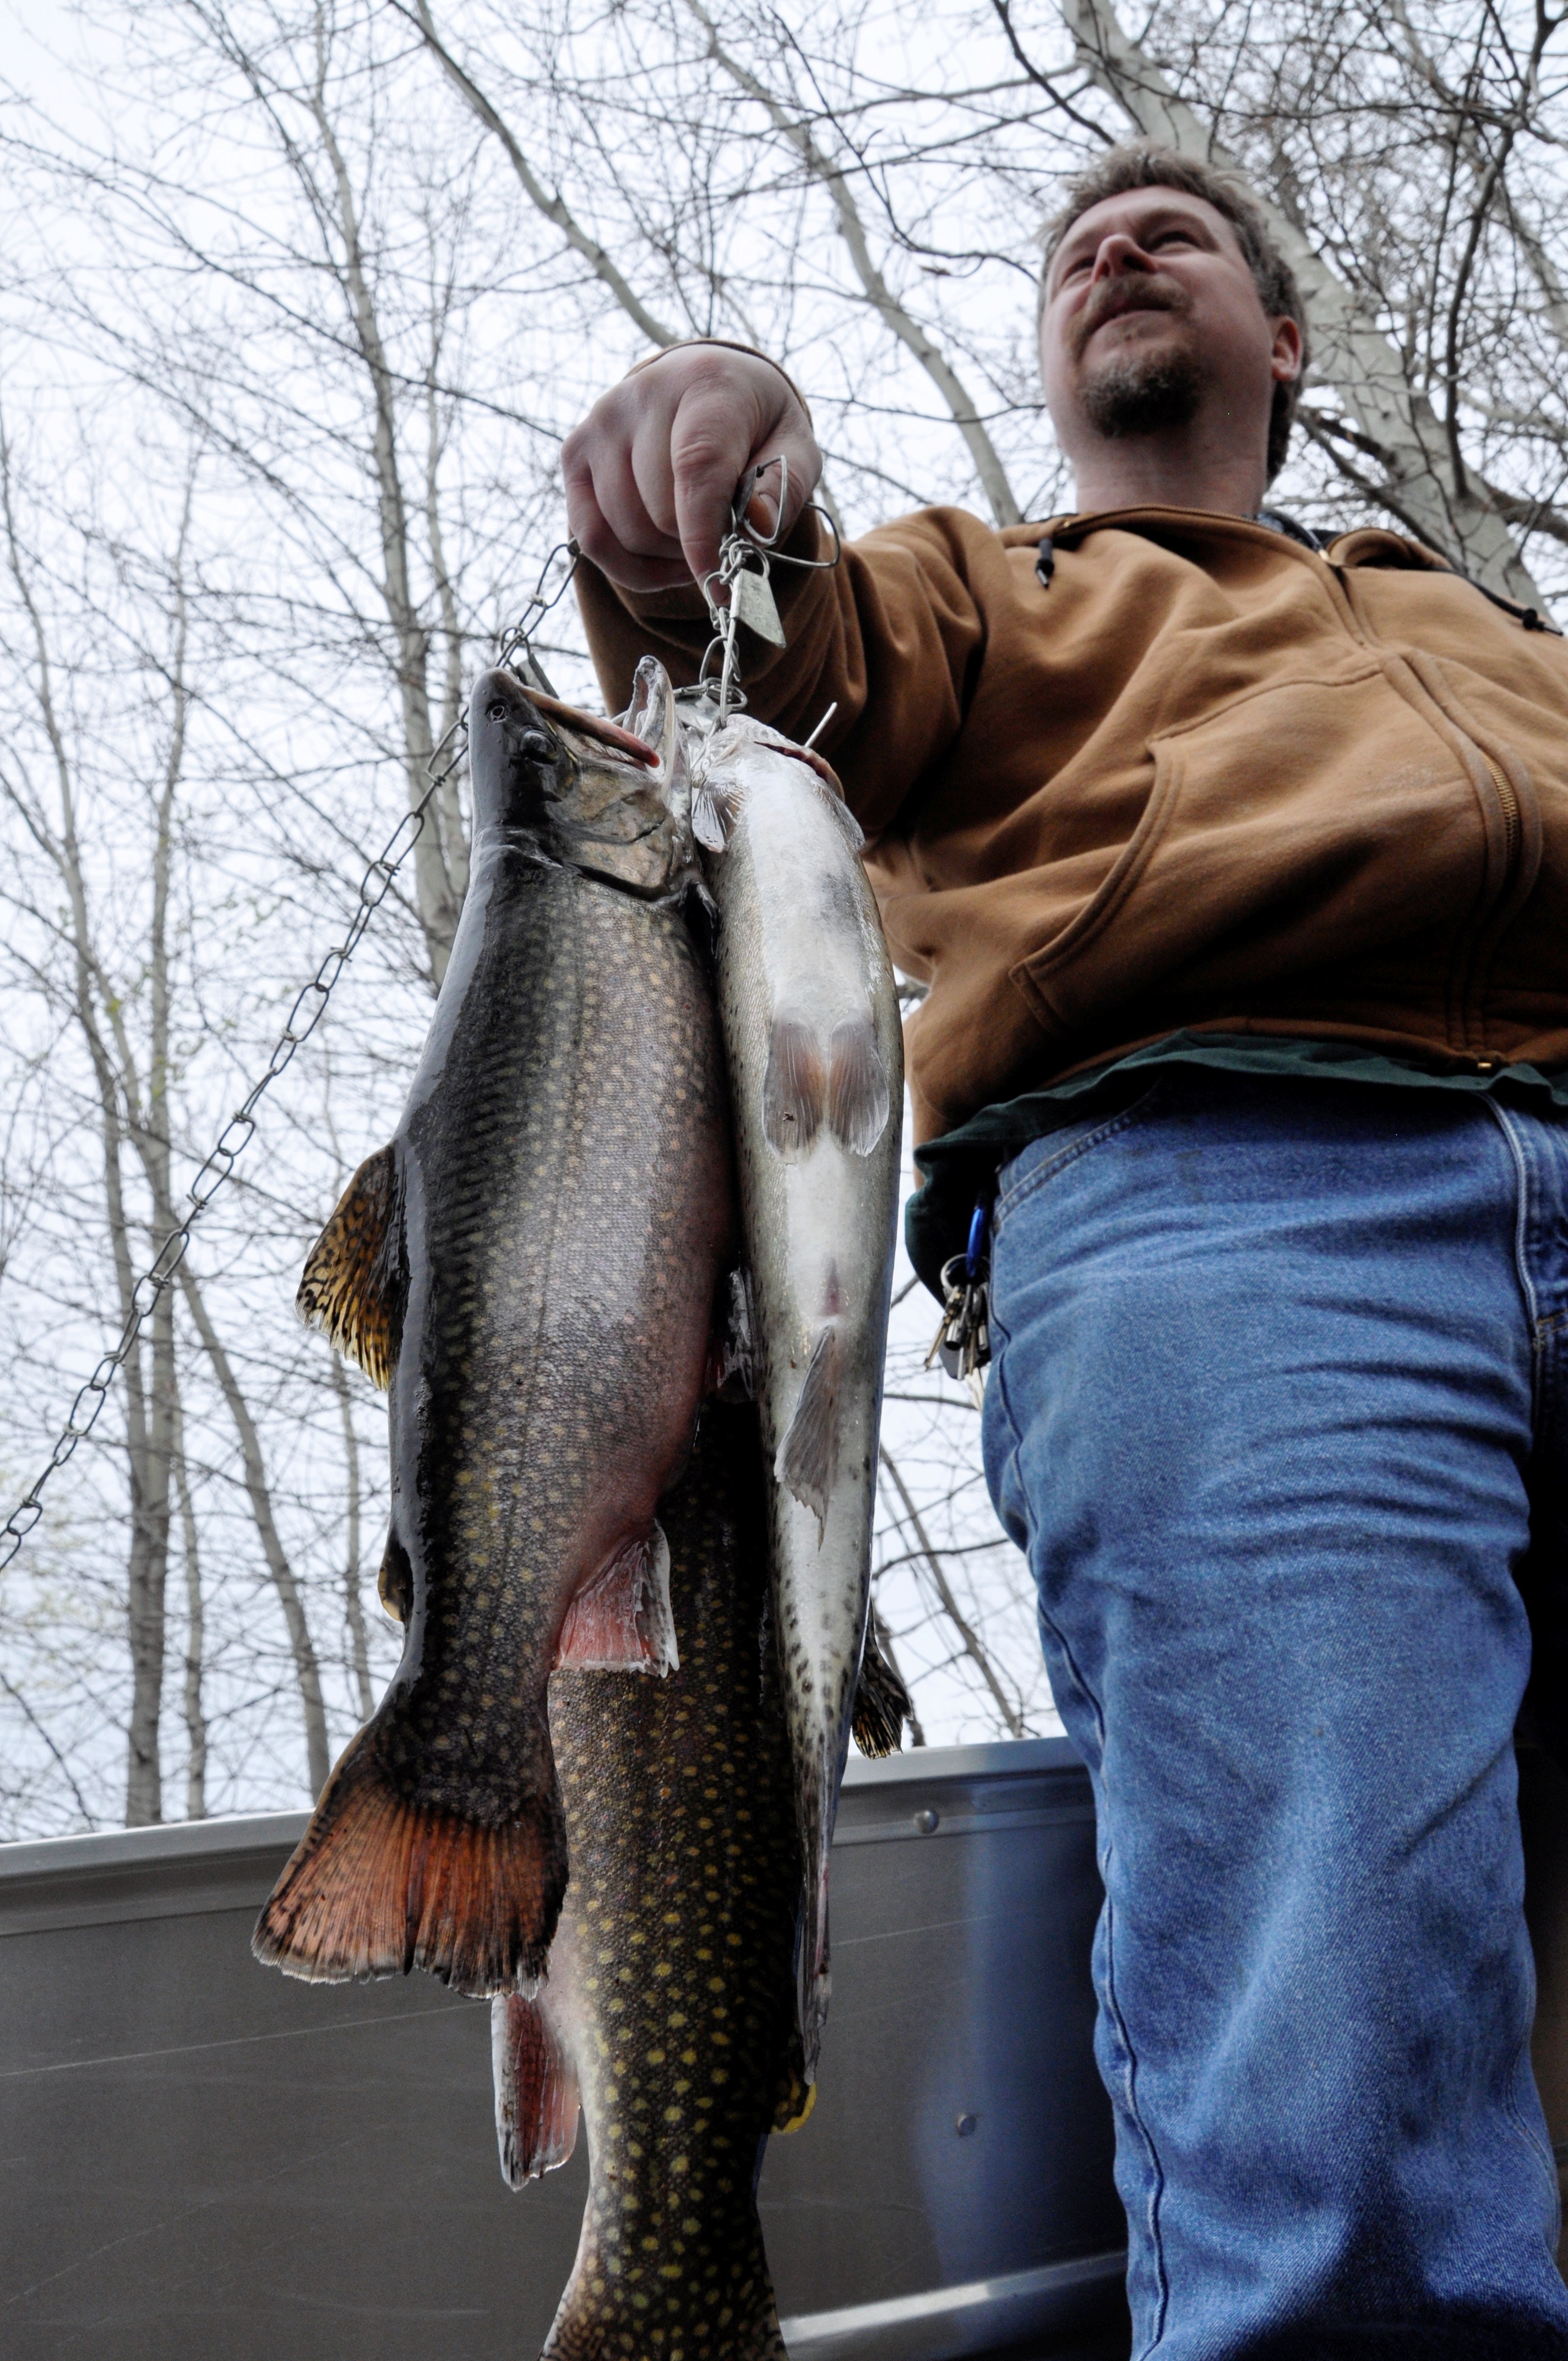 Eastern Washington's top trout lakes surveyed The SpokesmanReview